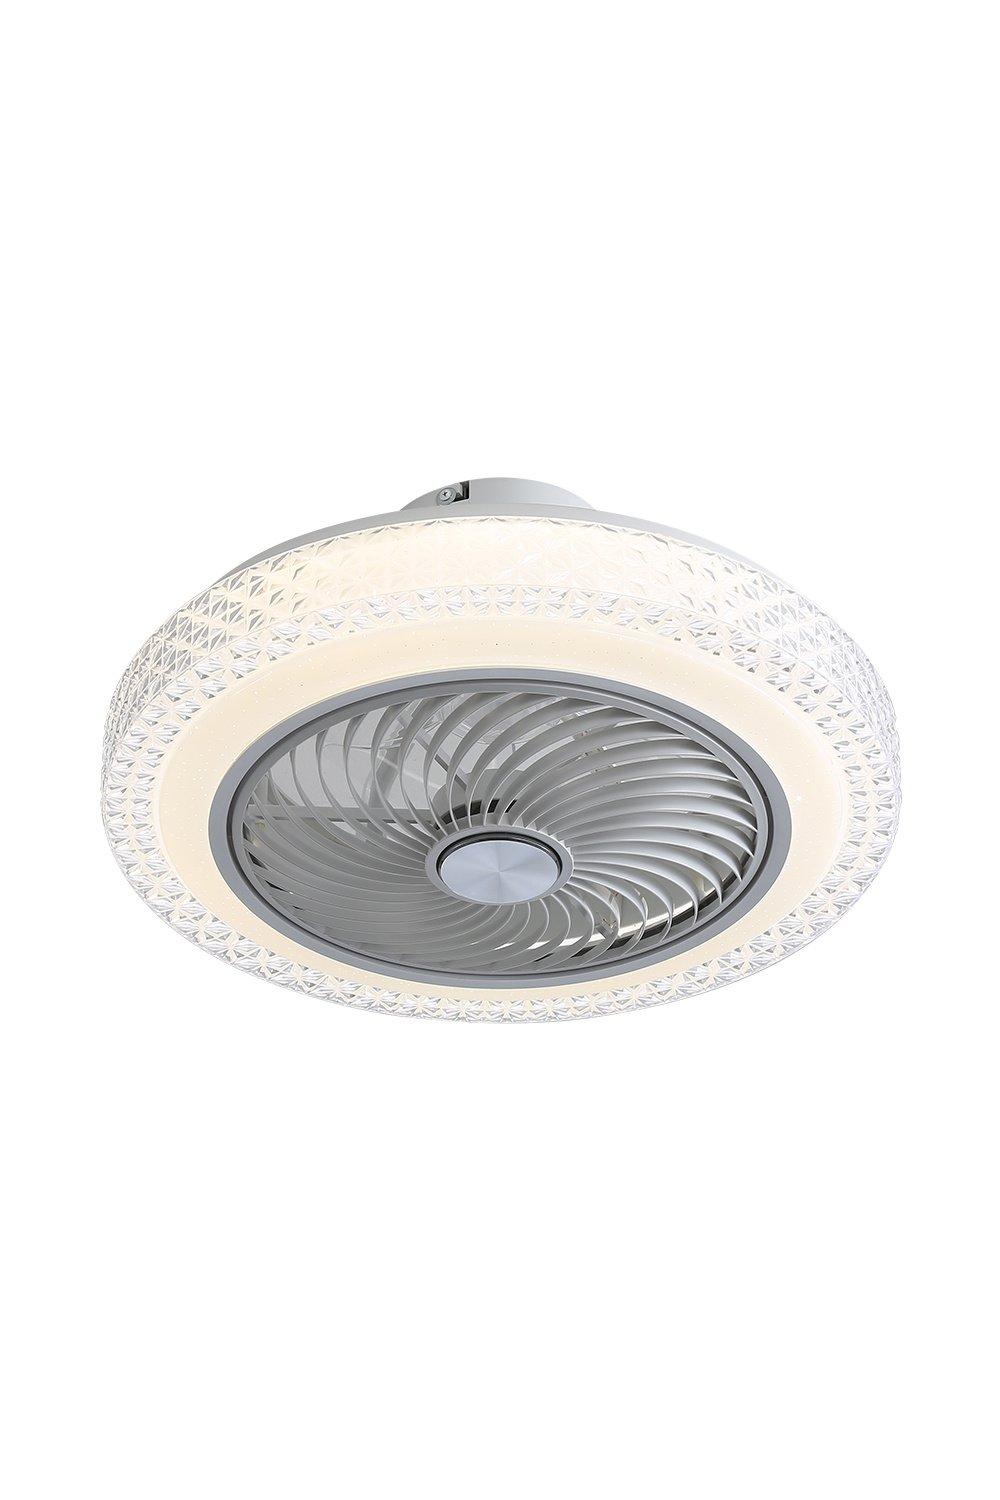 20-inch Acrylic Ceiling Mount LED Fan Light